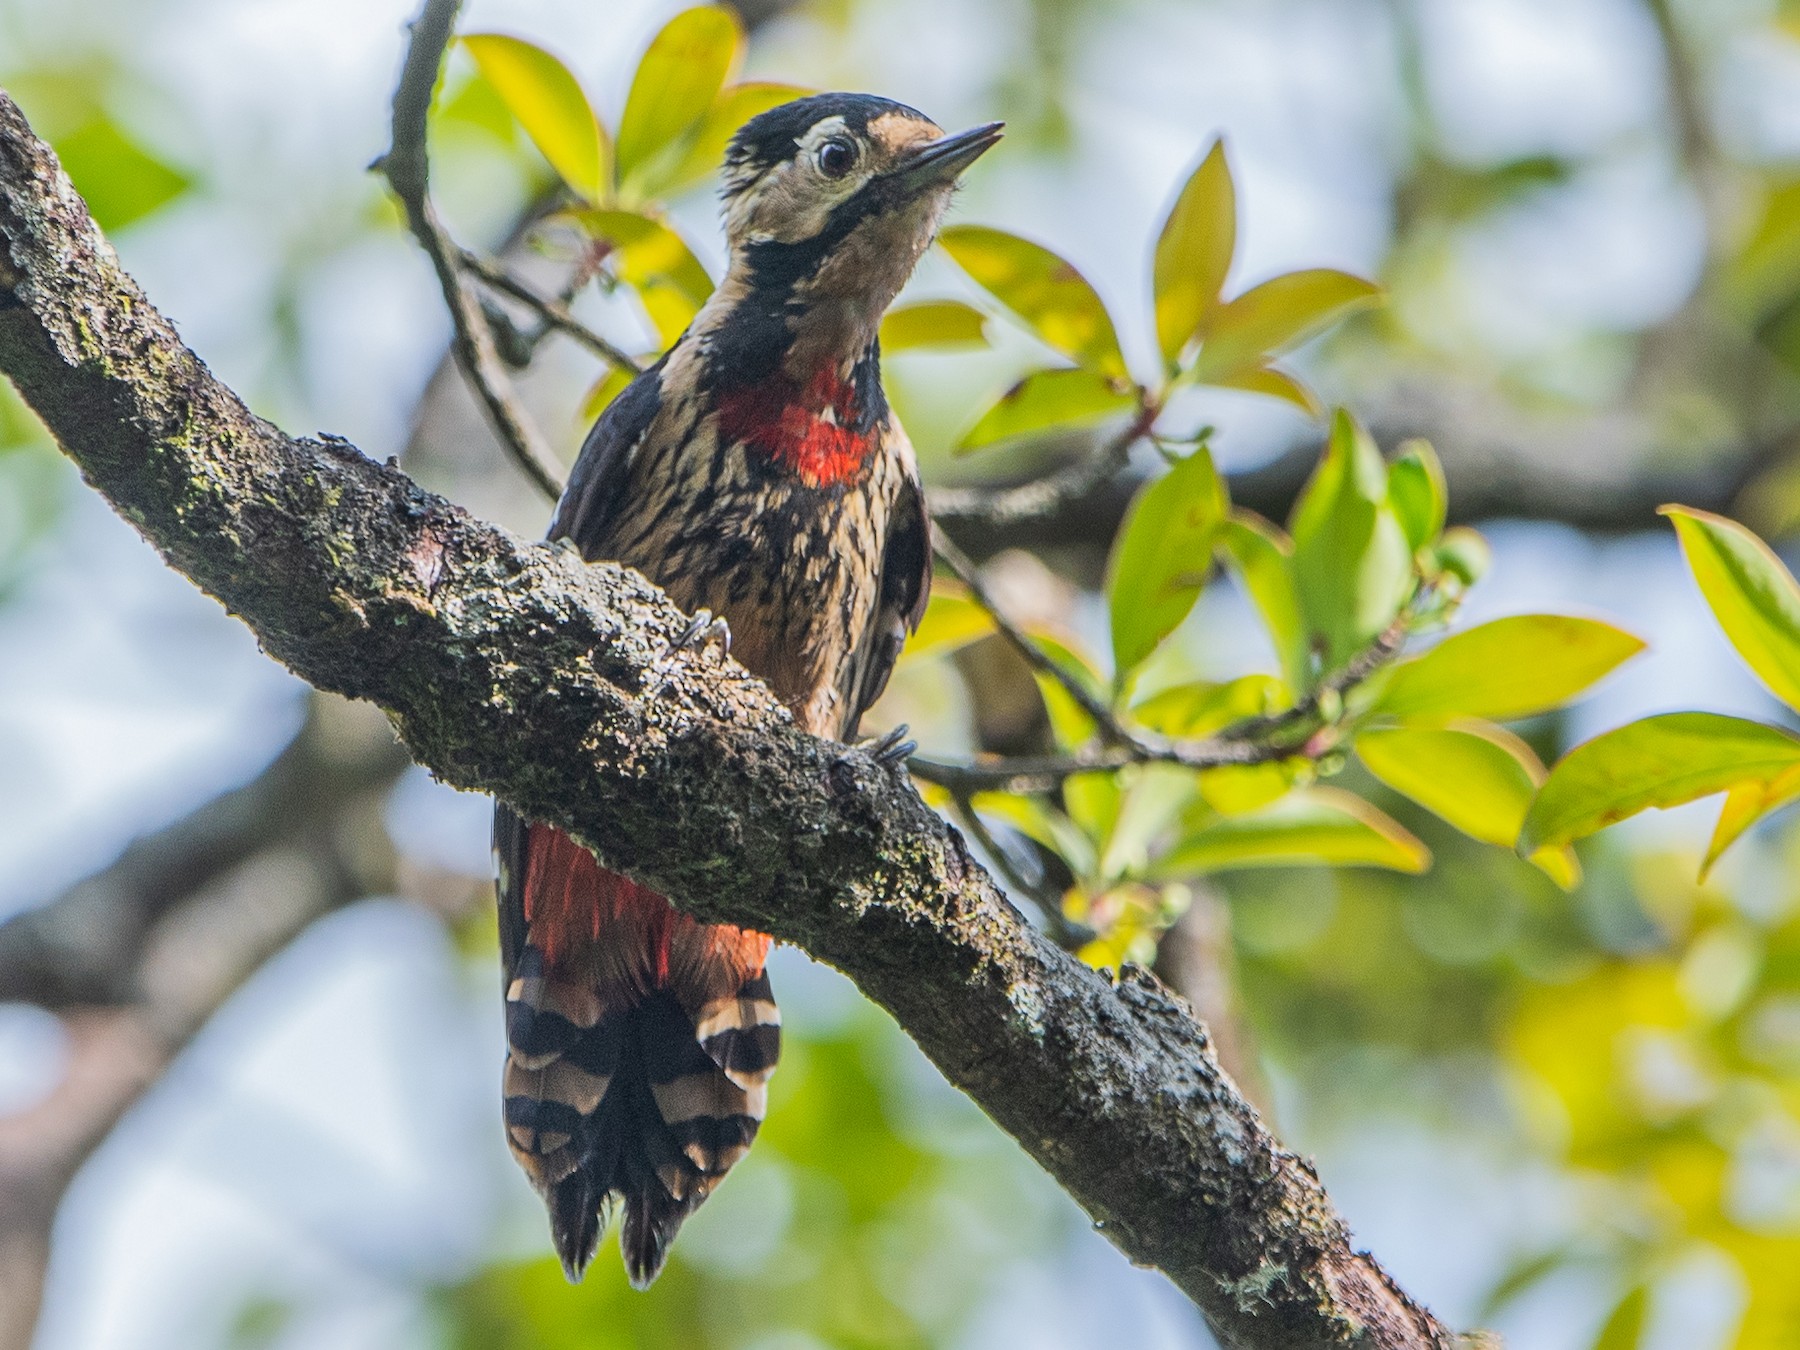 Necklaced Woodpecker - Ngoc Sam Thuong Dang